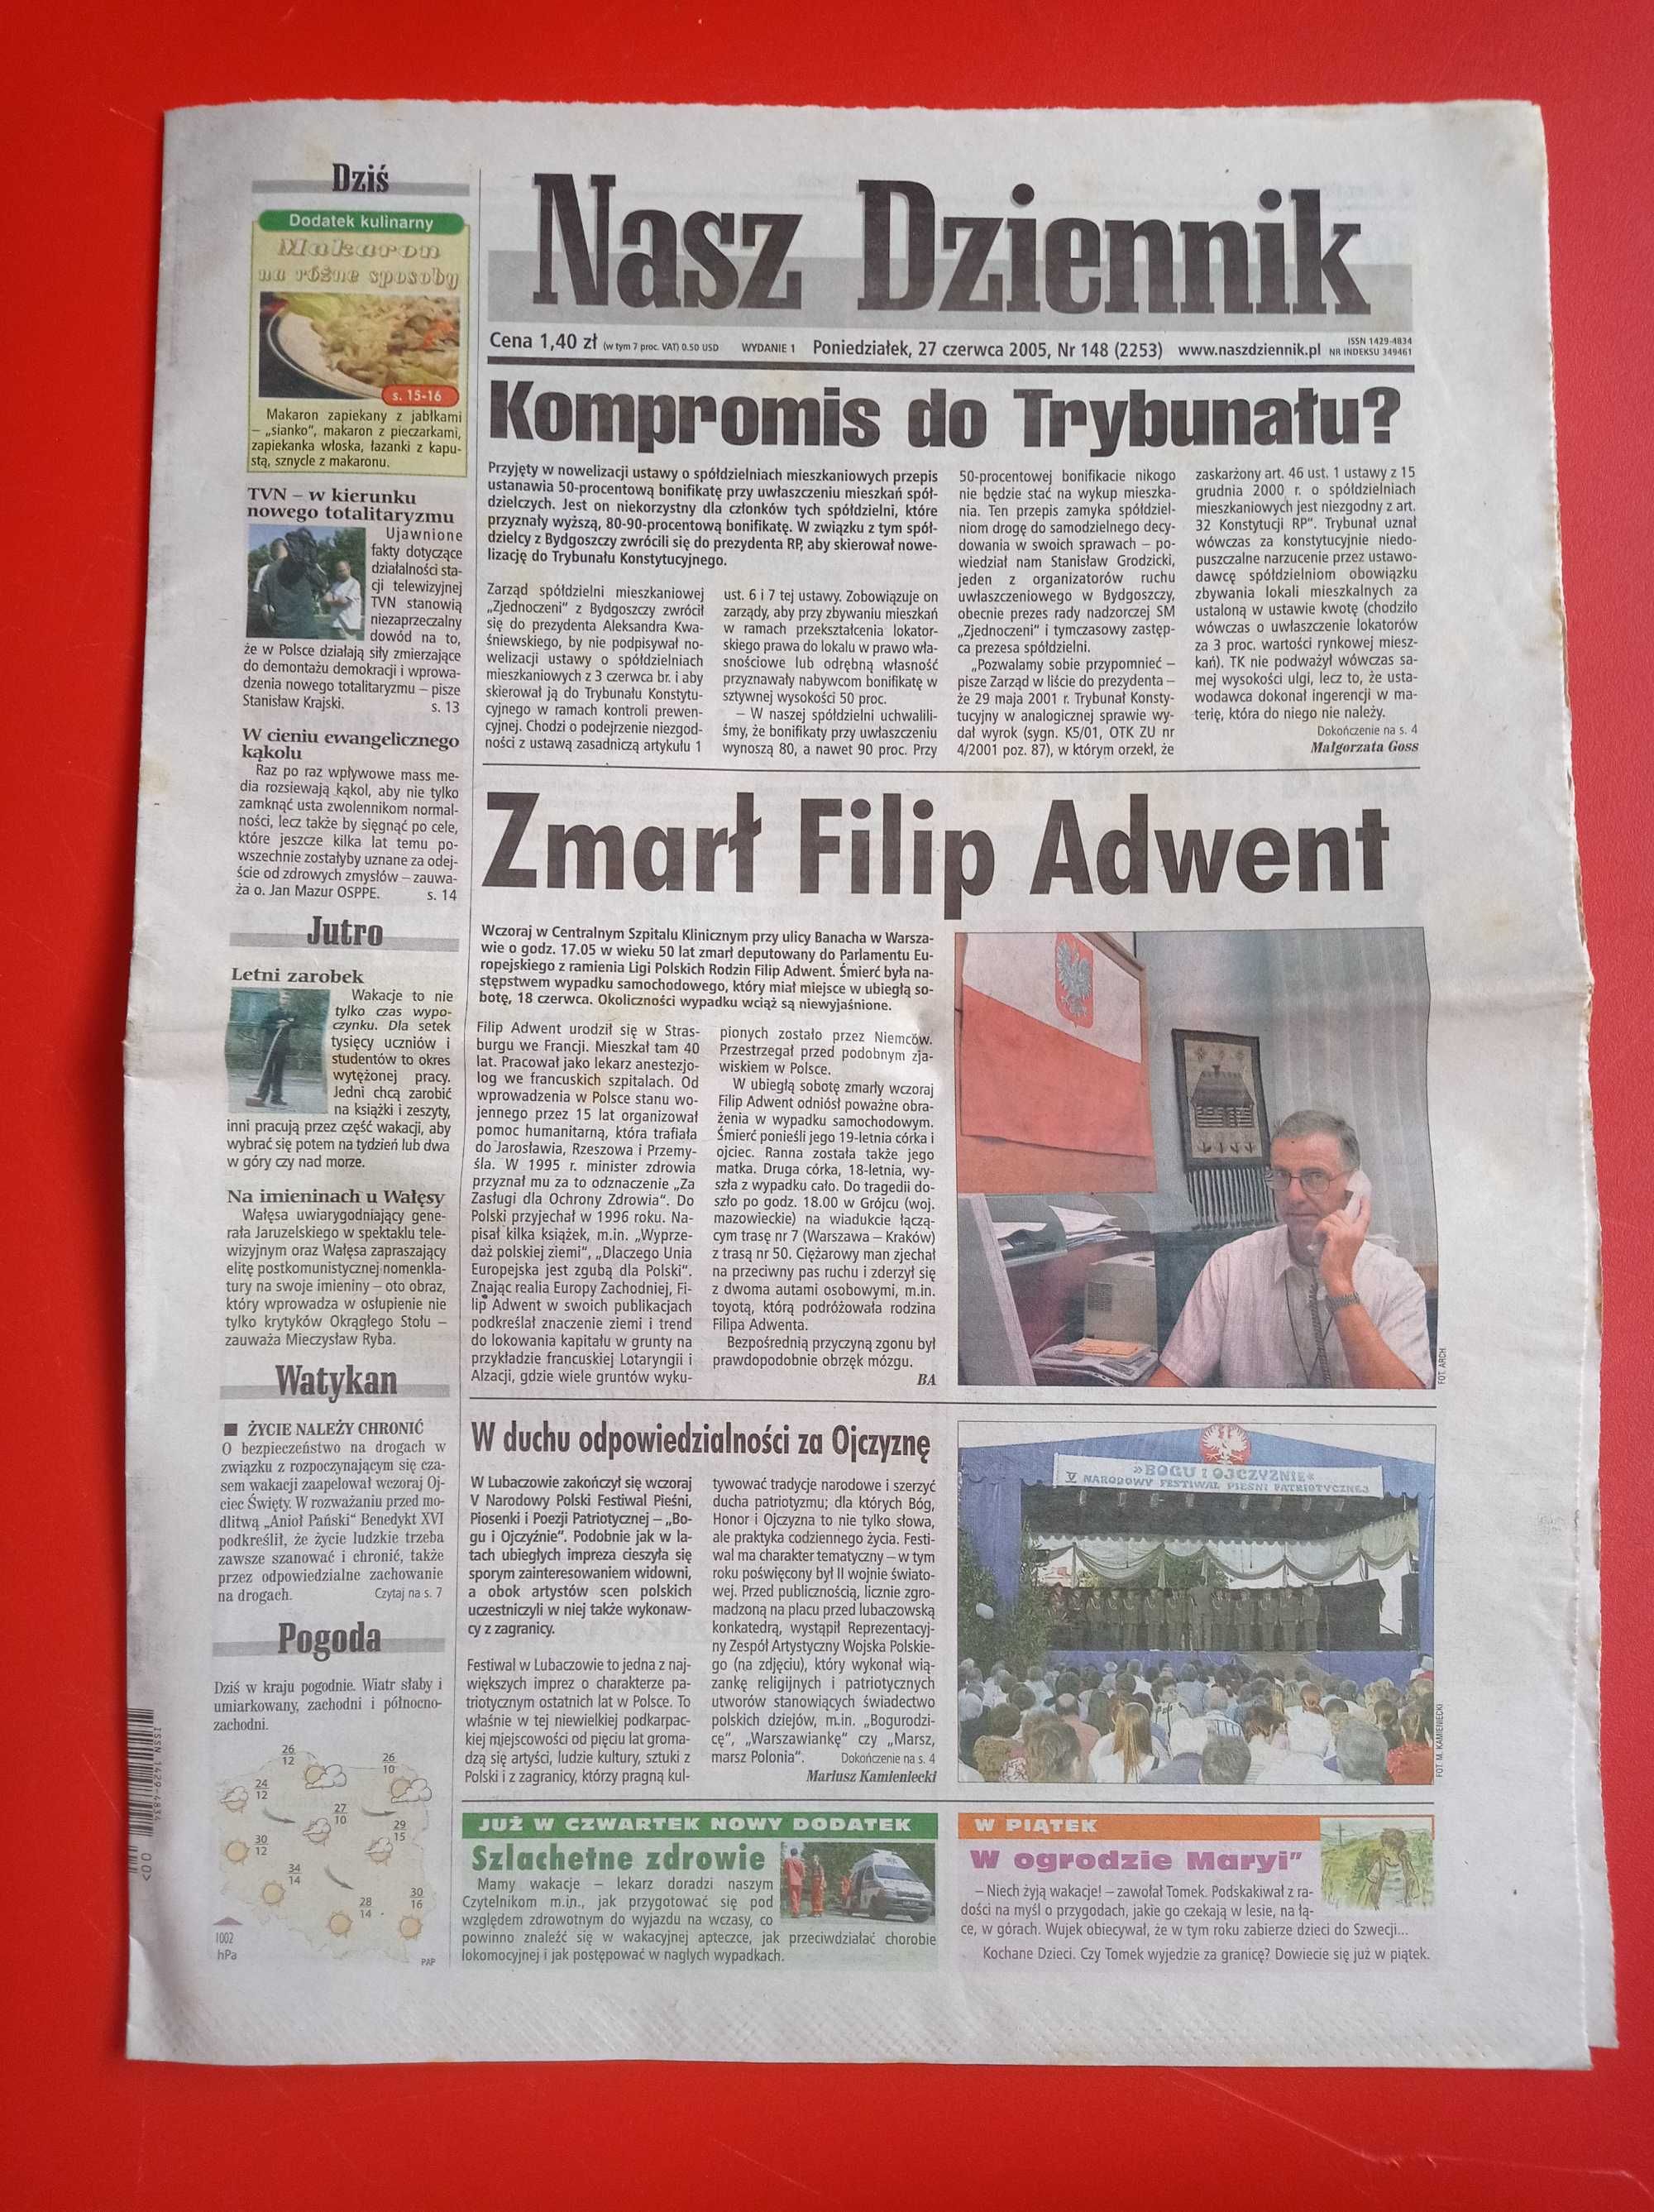 Nasz Dziennik, nr 148/2005, 27 czerwca 2005